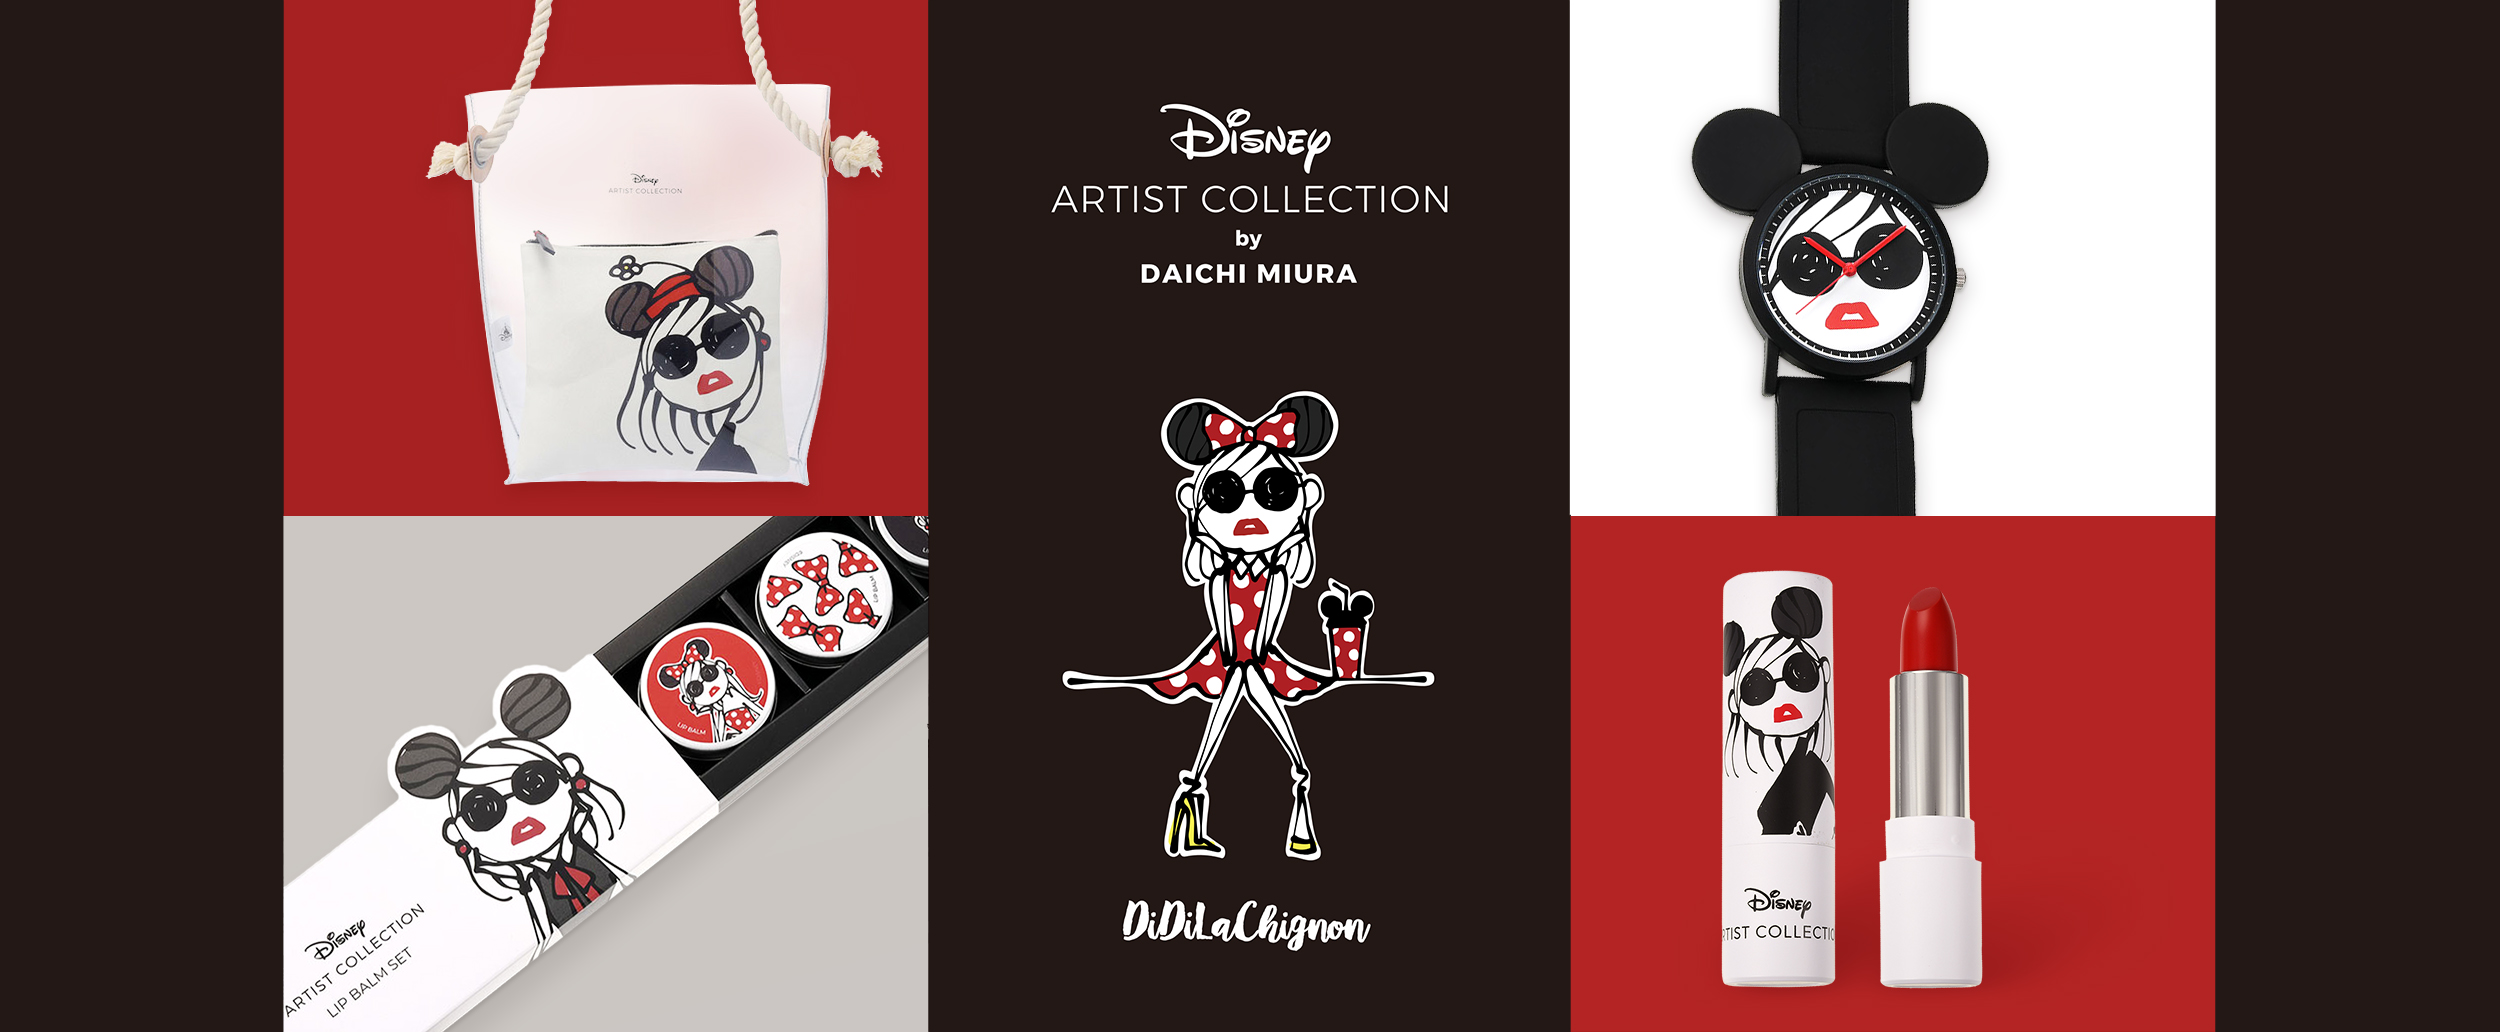 新コレクション Disney Artist Collection By Daichi Miura がディズニー ストアにて1月15日 火 より発売 ウォルト ディズニー ジャパン株式会社のプレスリリース